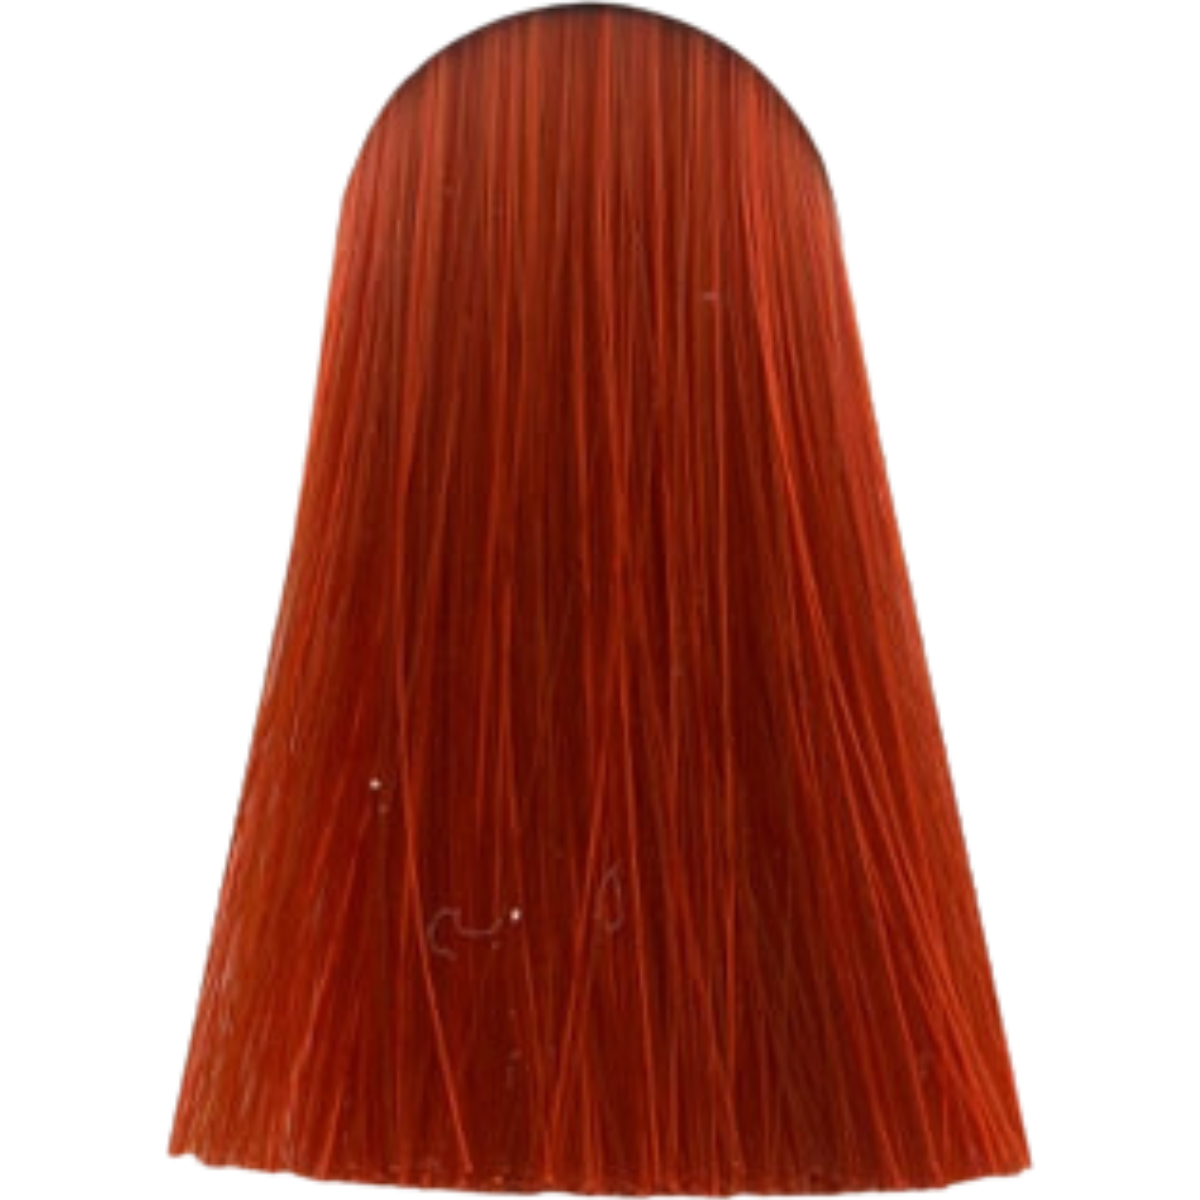 צבע לשיער 8.44X LIGHT BLONDE EXTRA COPPER אינדולה INDOLA צבע לשיער 60 גרם